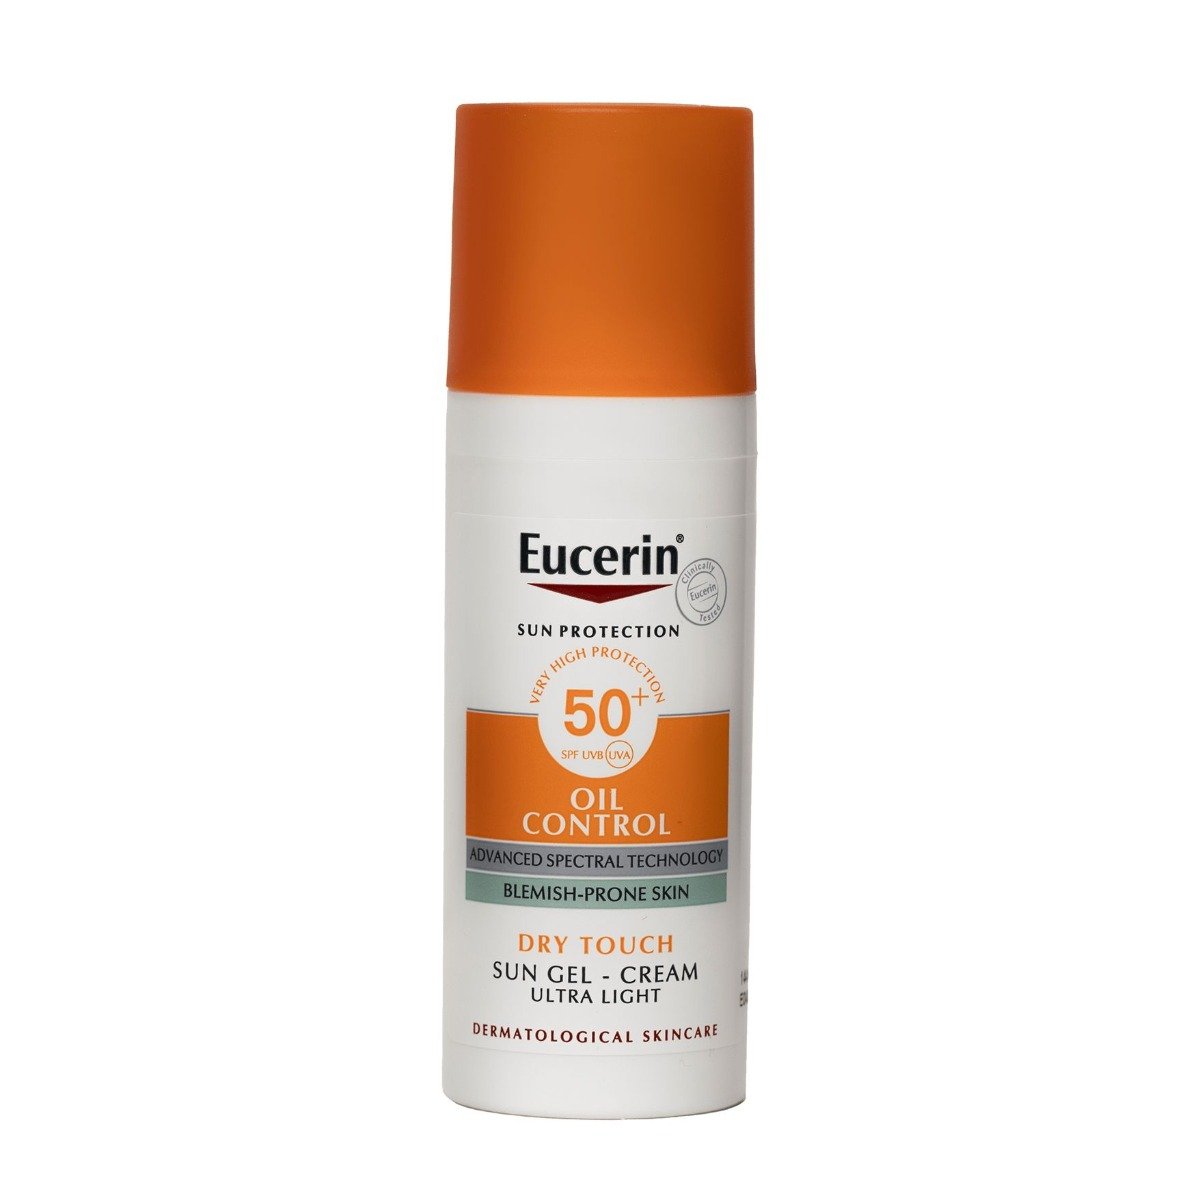 Eucerin Sun Protection Oil Control Dry Touch SPF 50+ Sun Gel-Cream - 50ml - Bloom Pharmacy